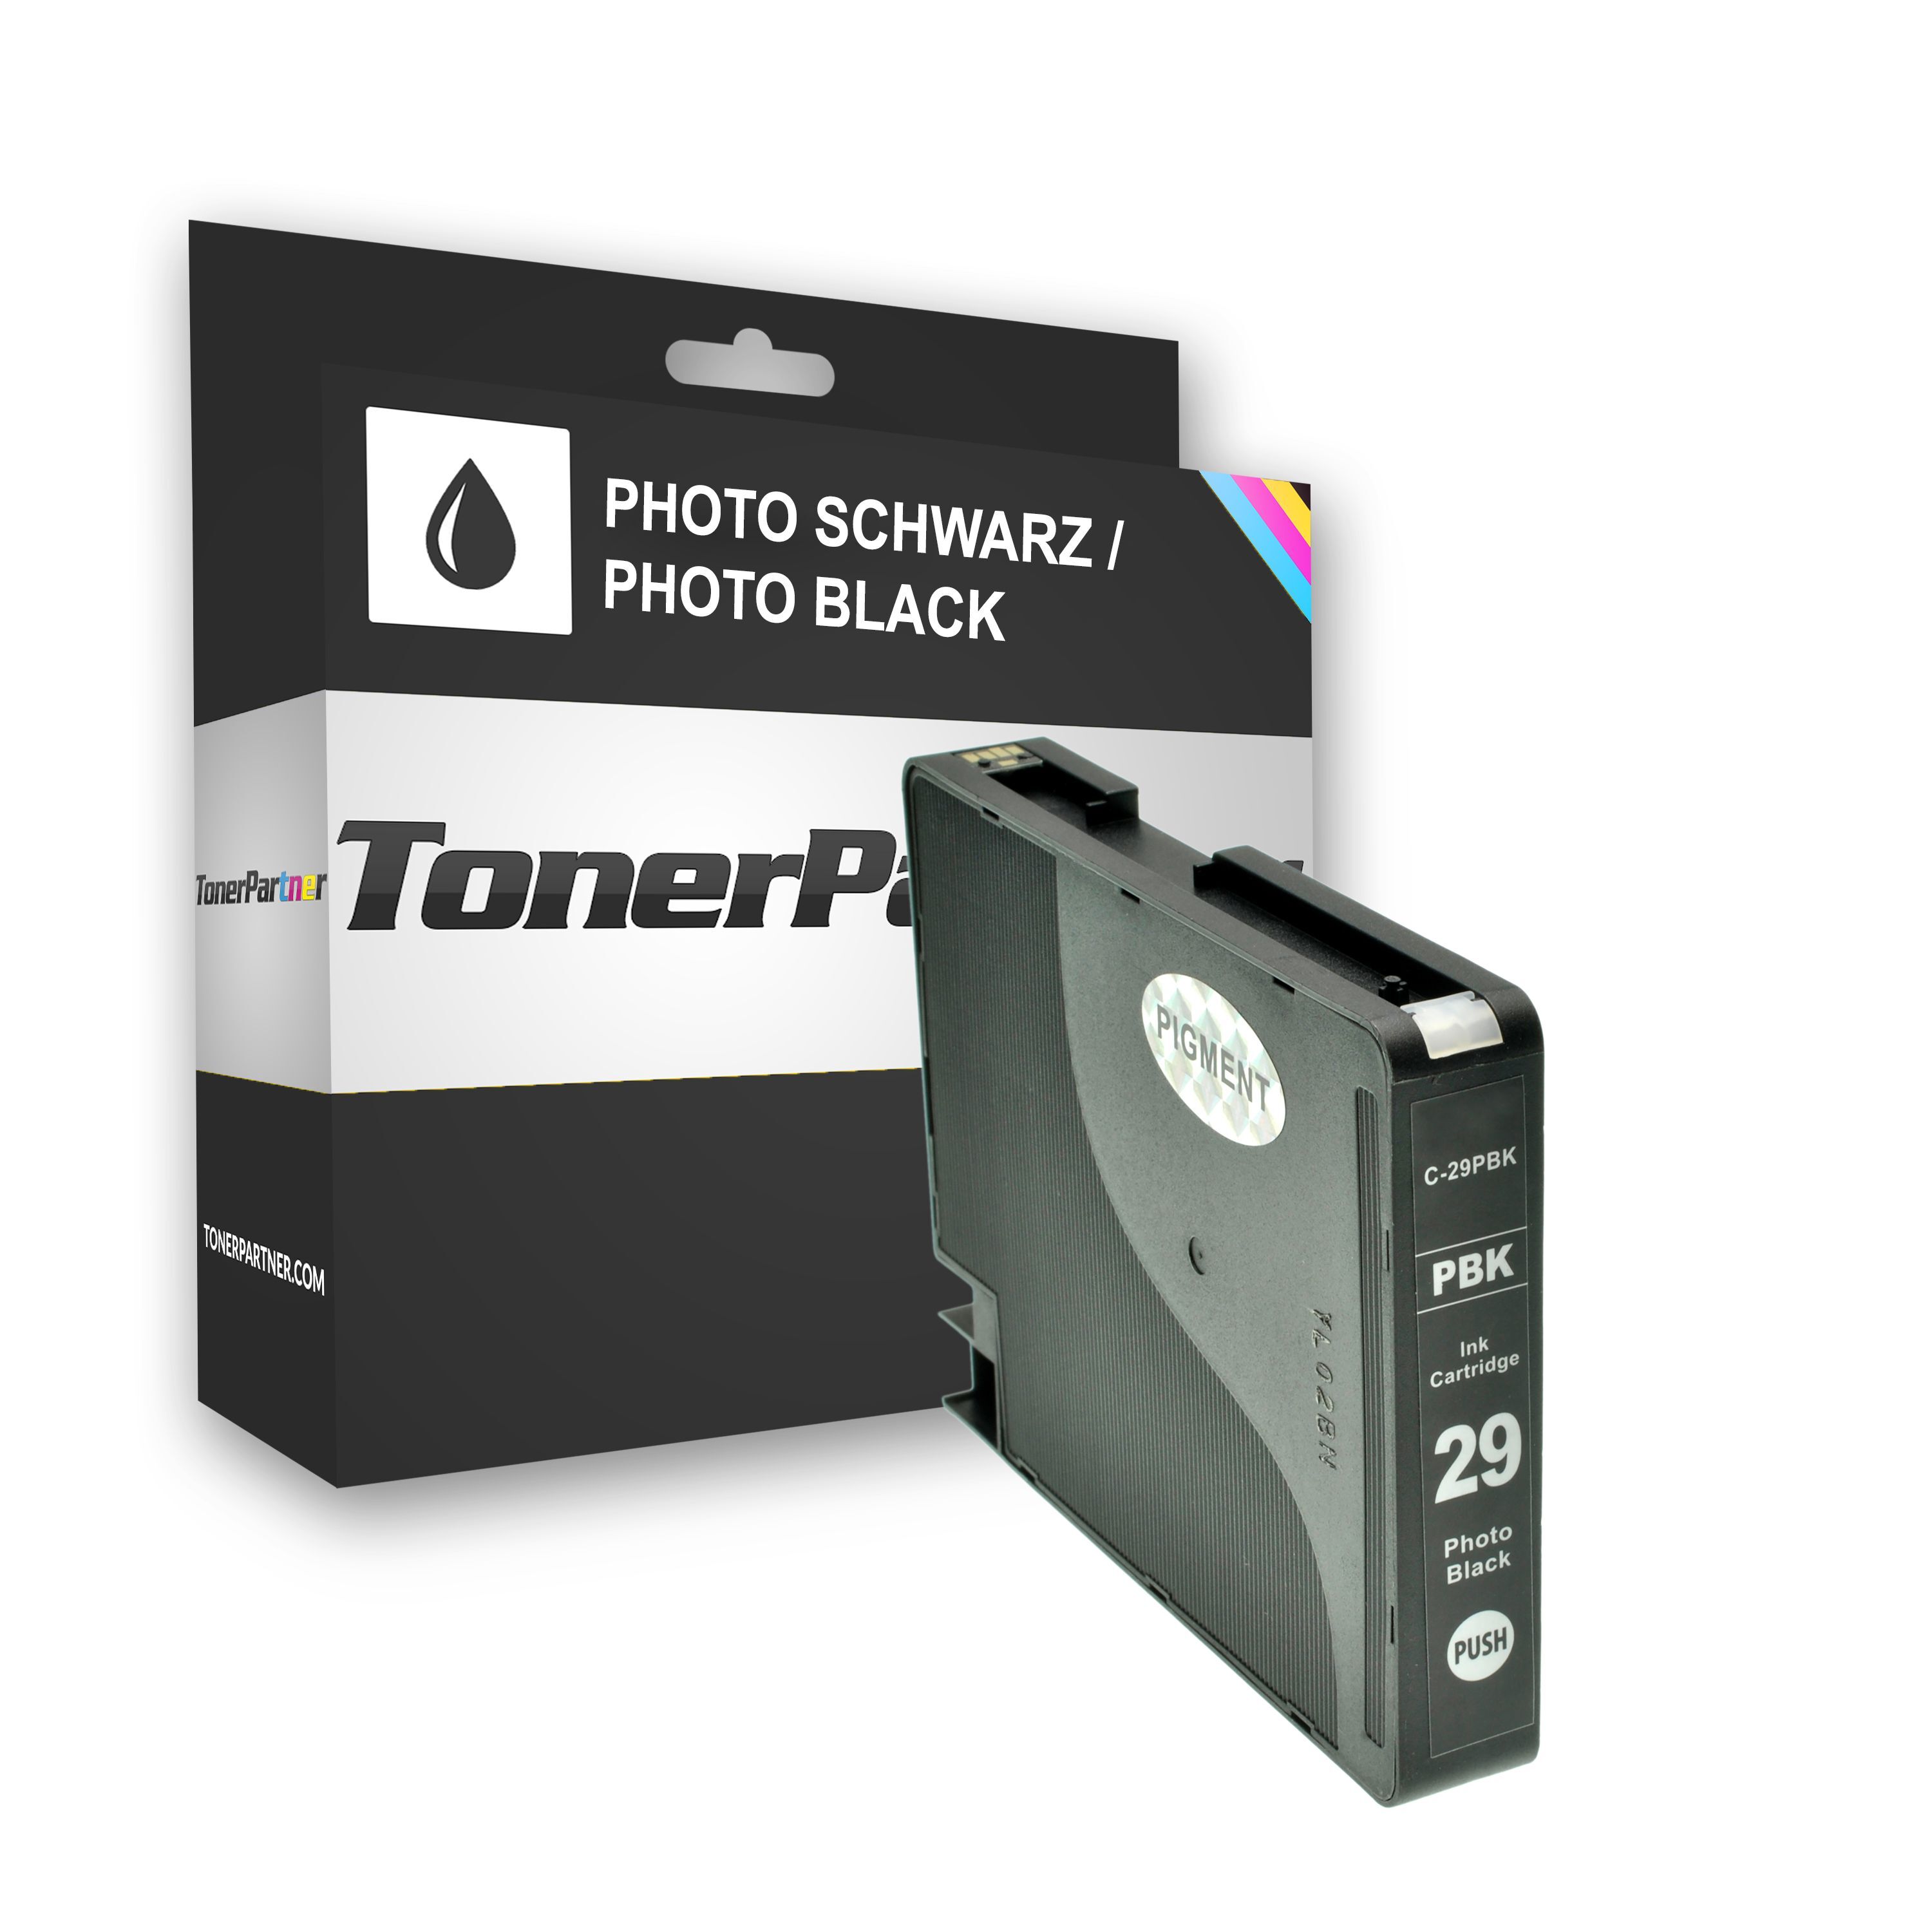 TonerPartner Kompatibel zu Canon 4869 B 001 / PGI-29 PBK Tintenpatrone photoschwarz, 1.300 Seiten, 1,07 Rp pro Seite, Inhalt: 36 ml von TonerPartner